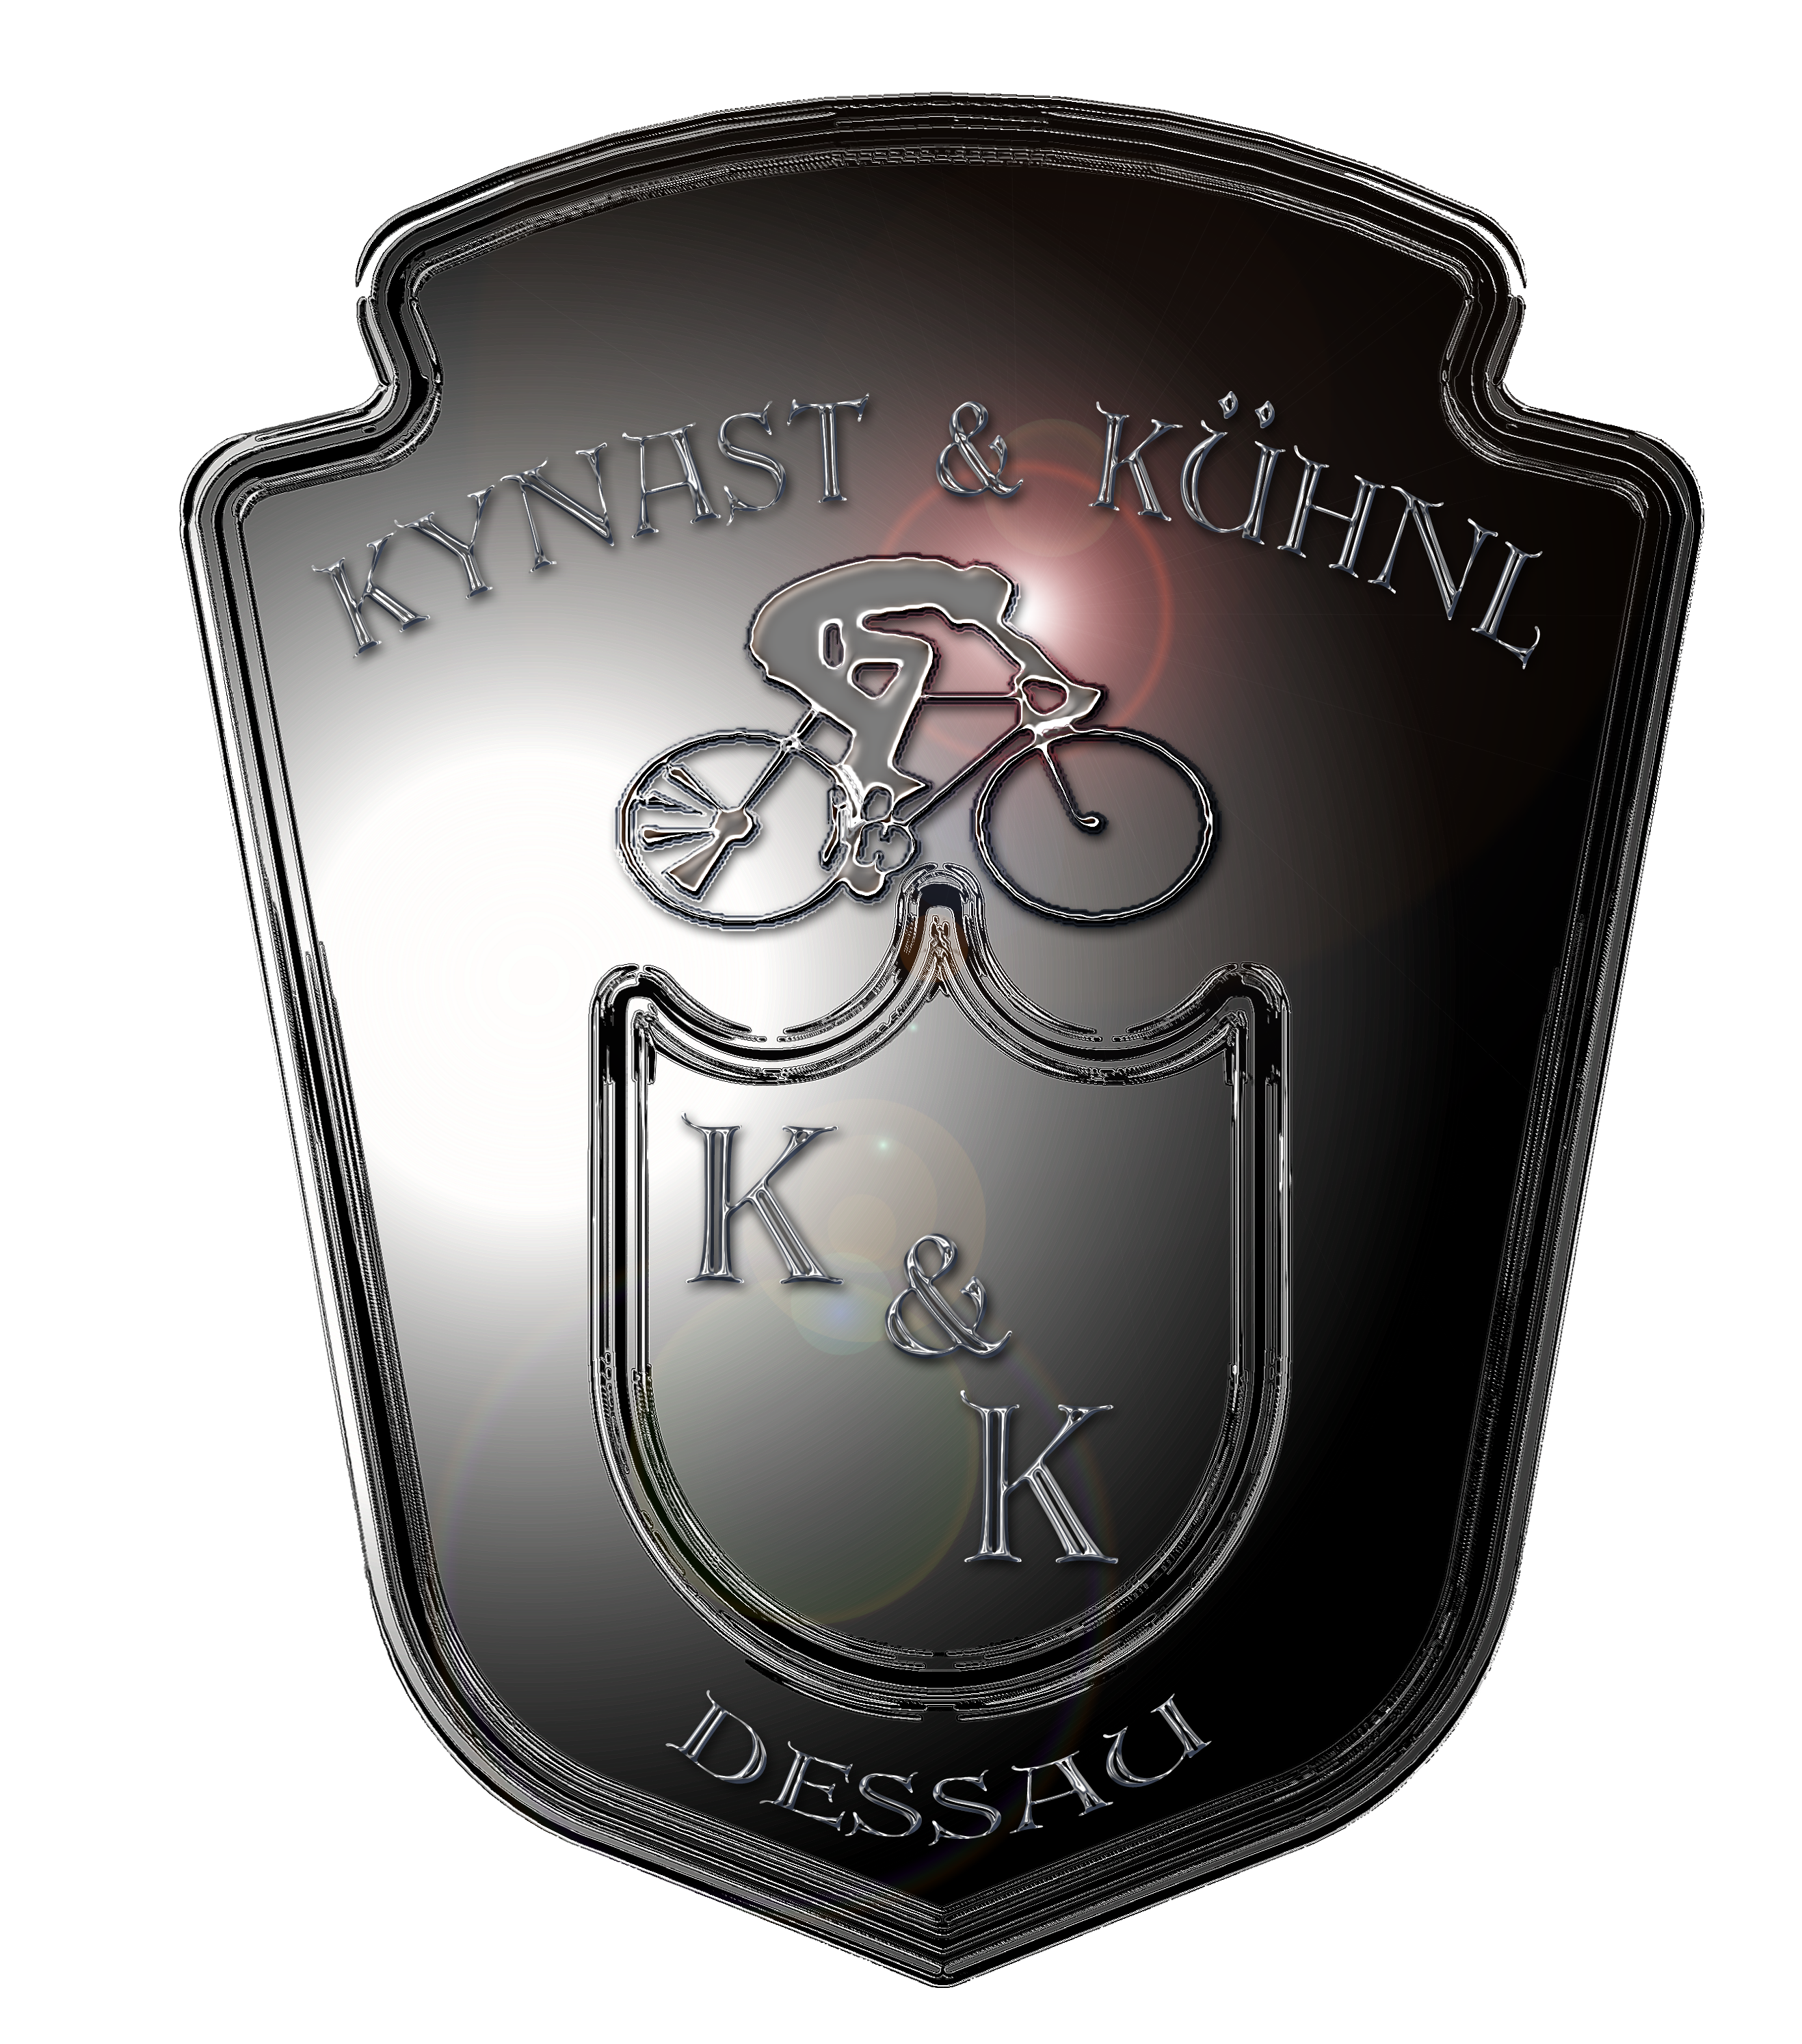 Fahrrad Dessau